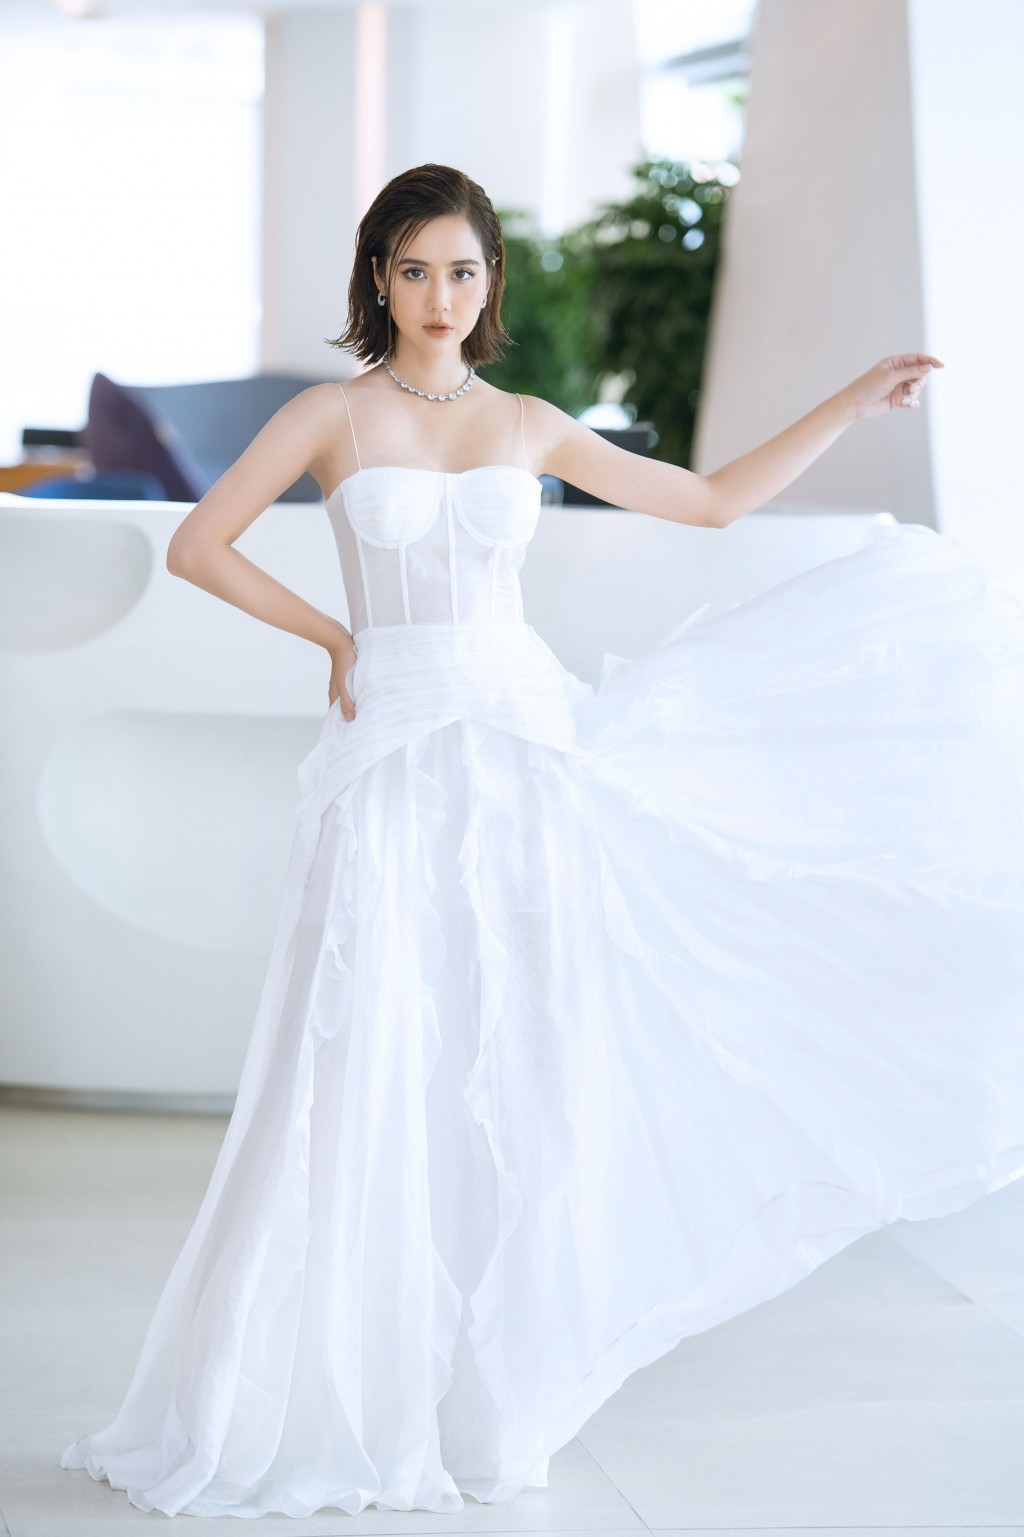 Phan Minh Huyền khiến công chúng ngây ngất với vẻ đẹp nữ thần khi diện váy trắng-3